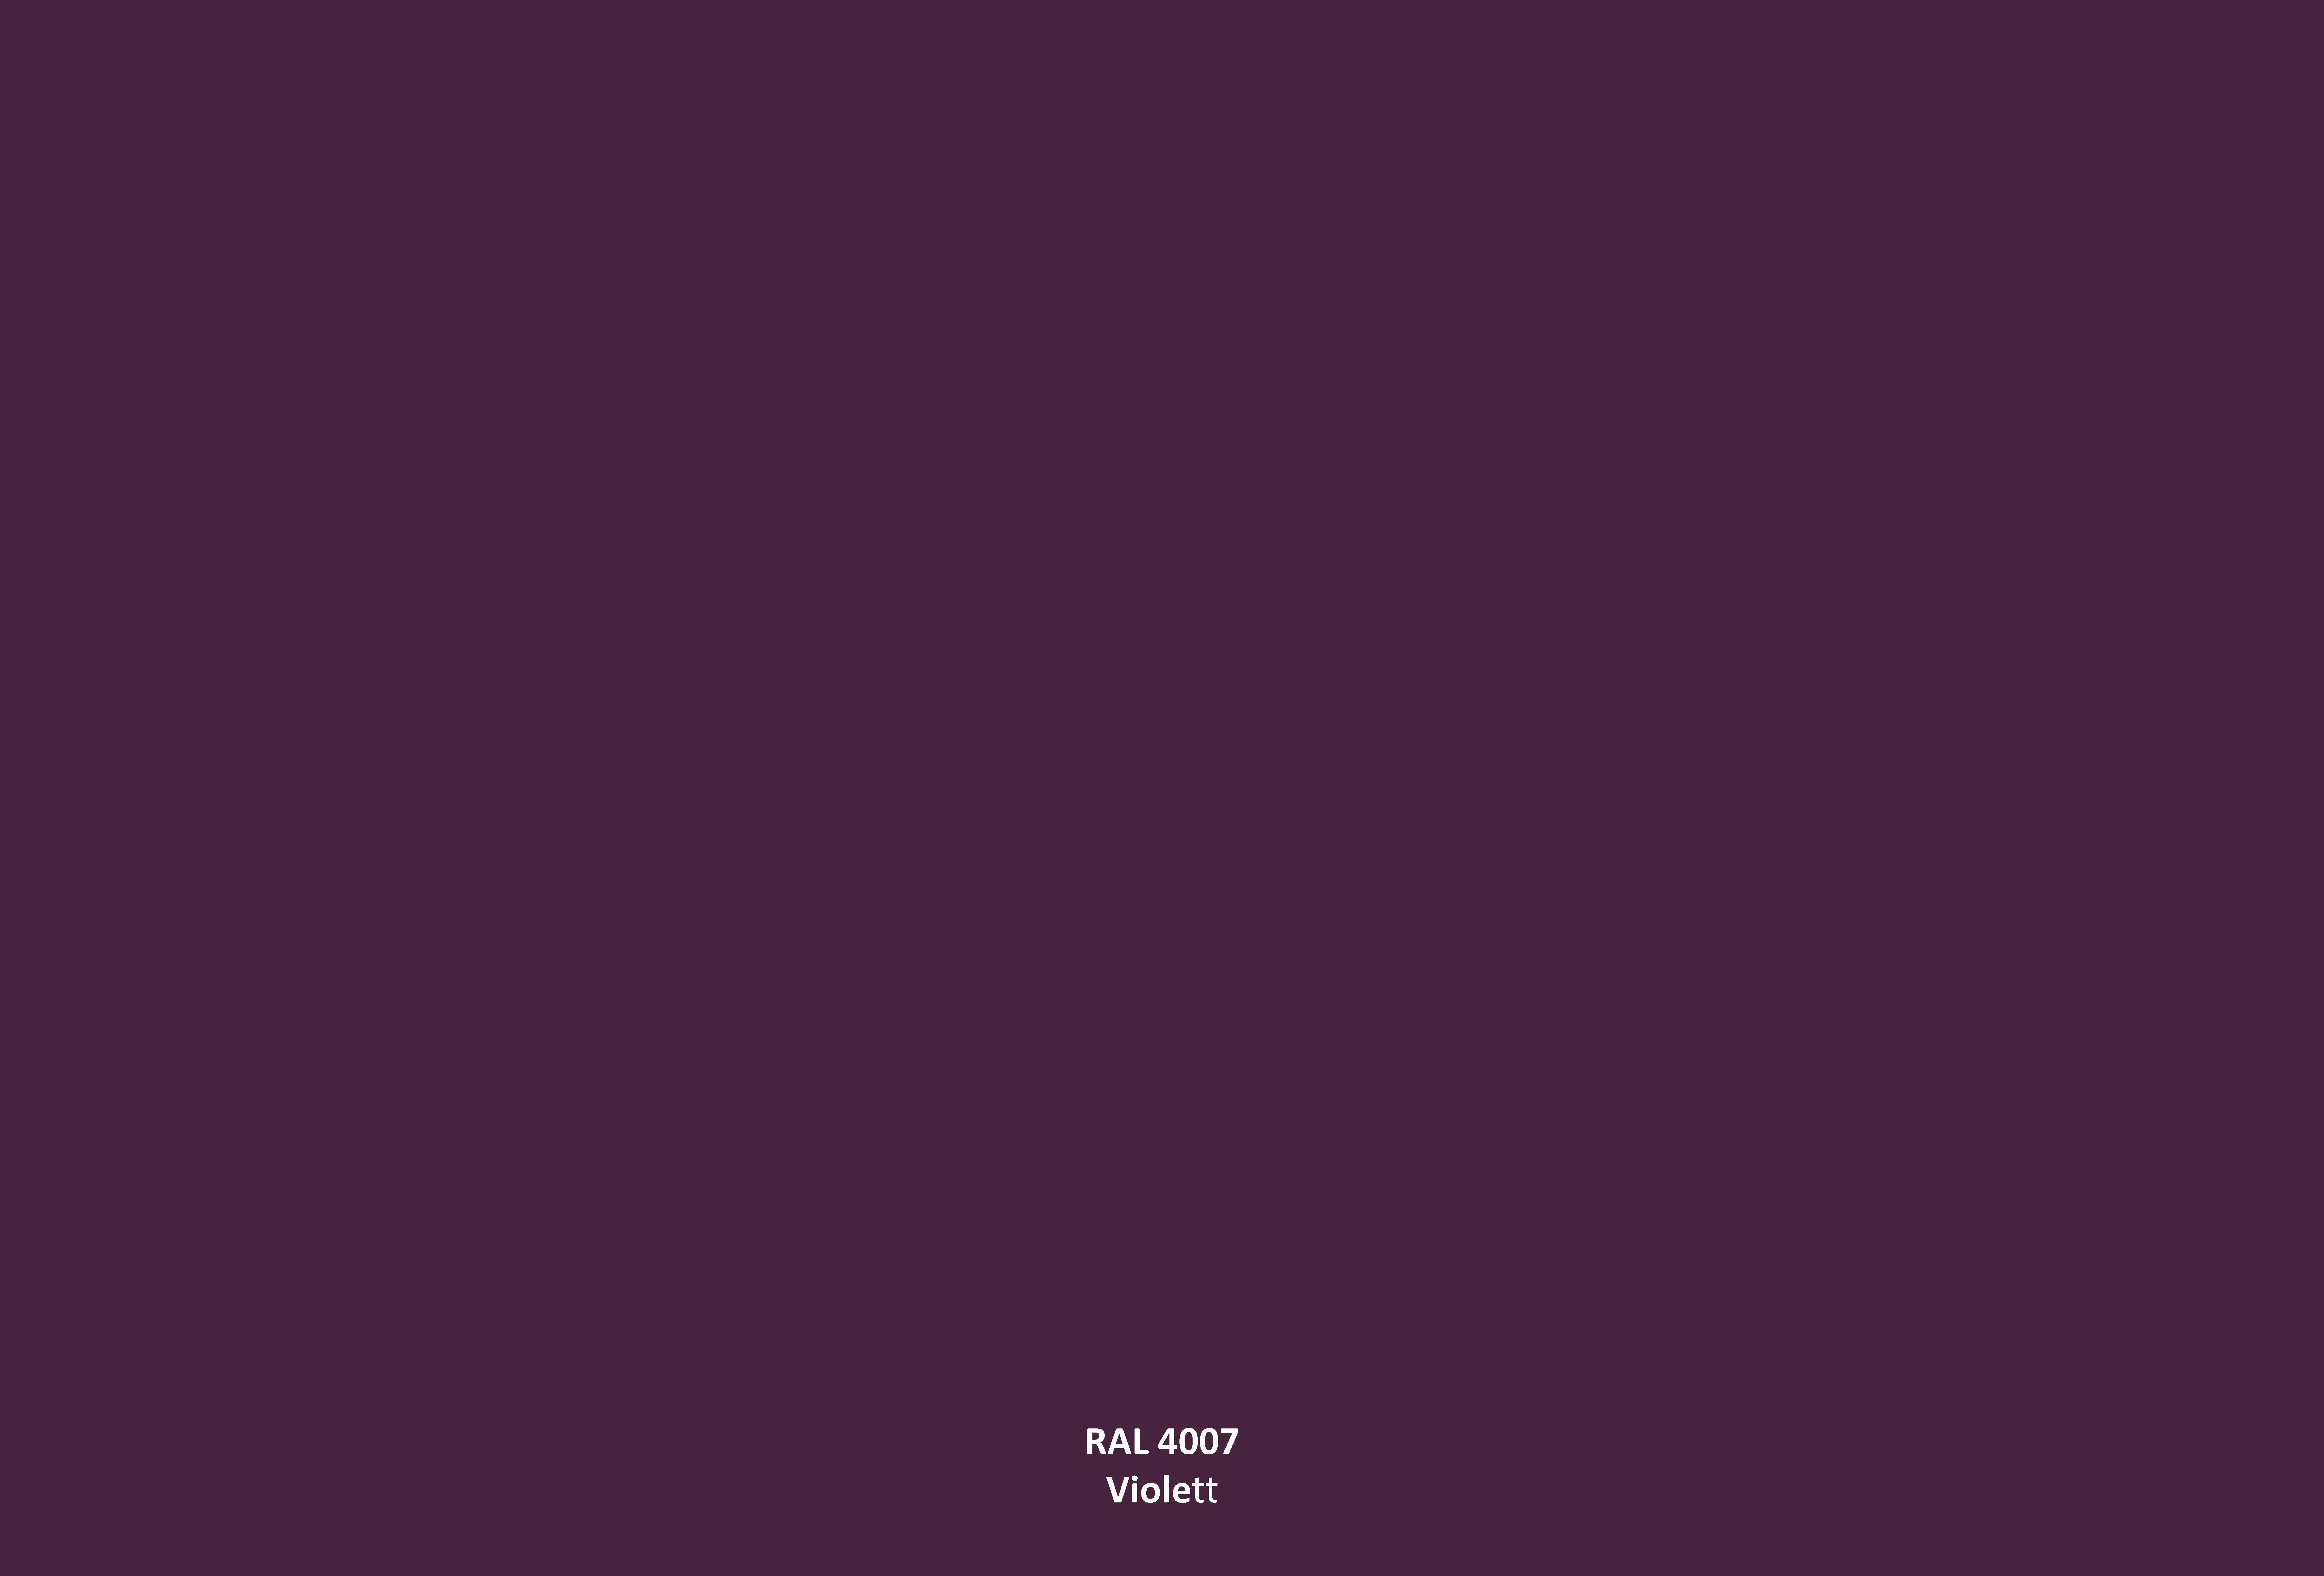 RAL 4007 Purpurviolett / Violett